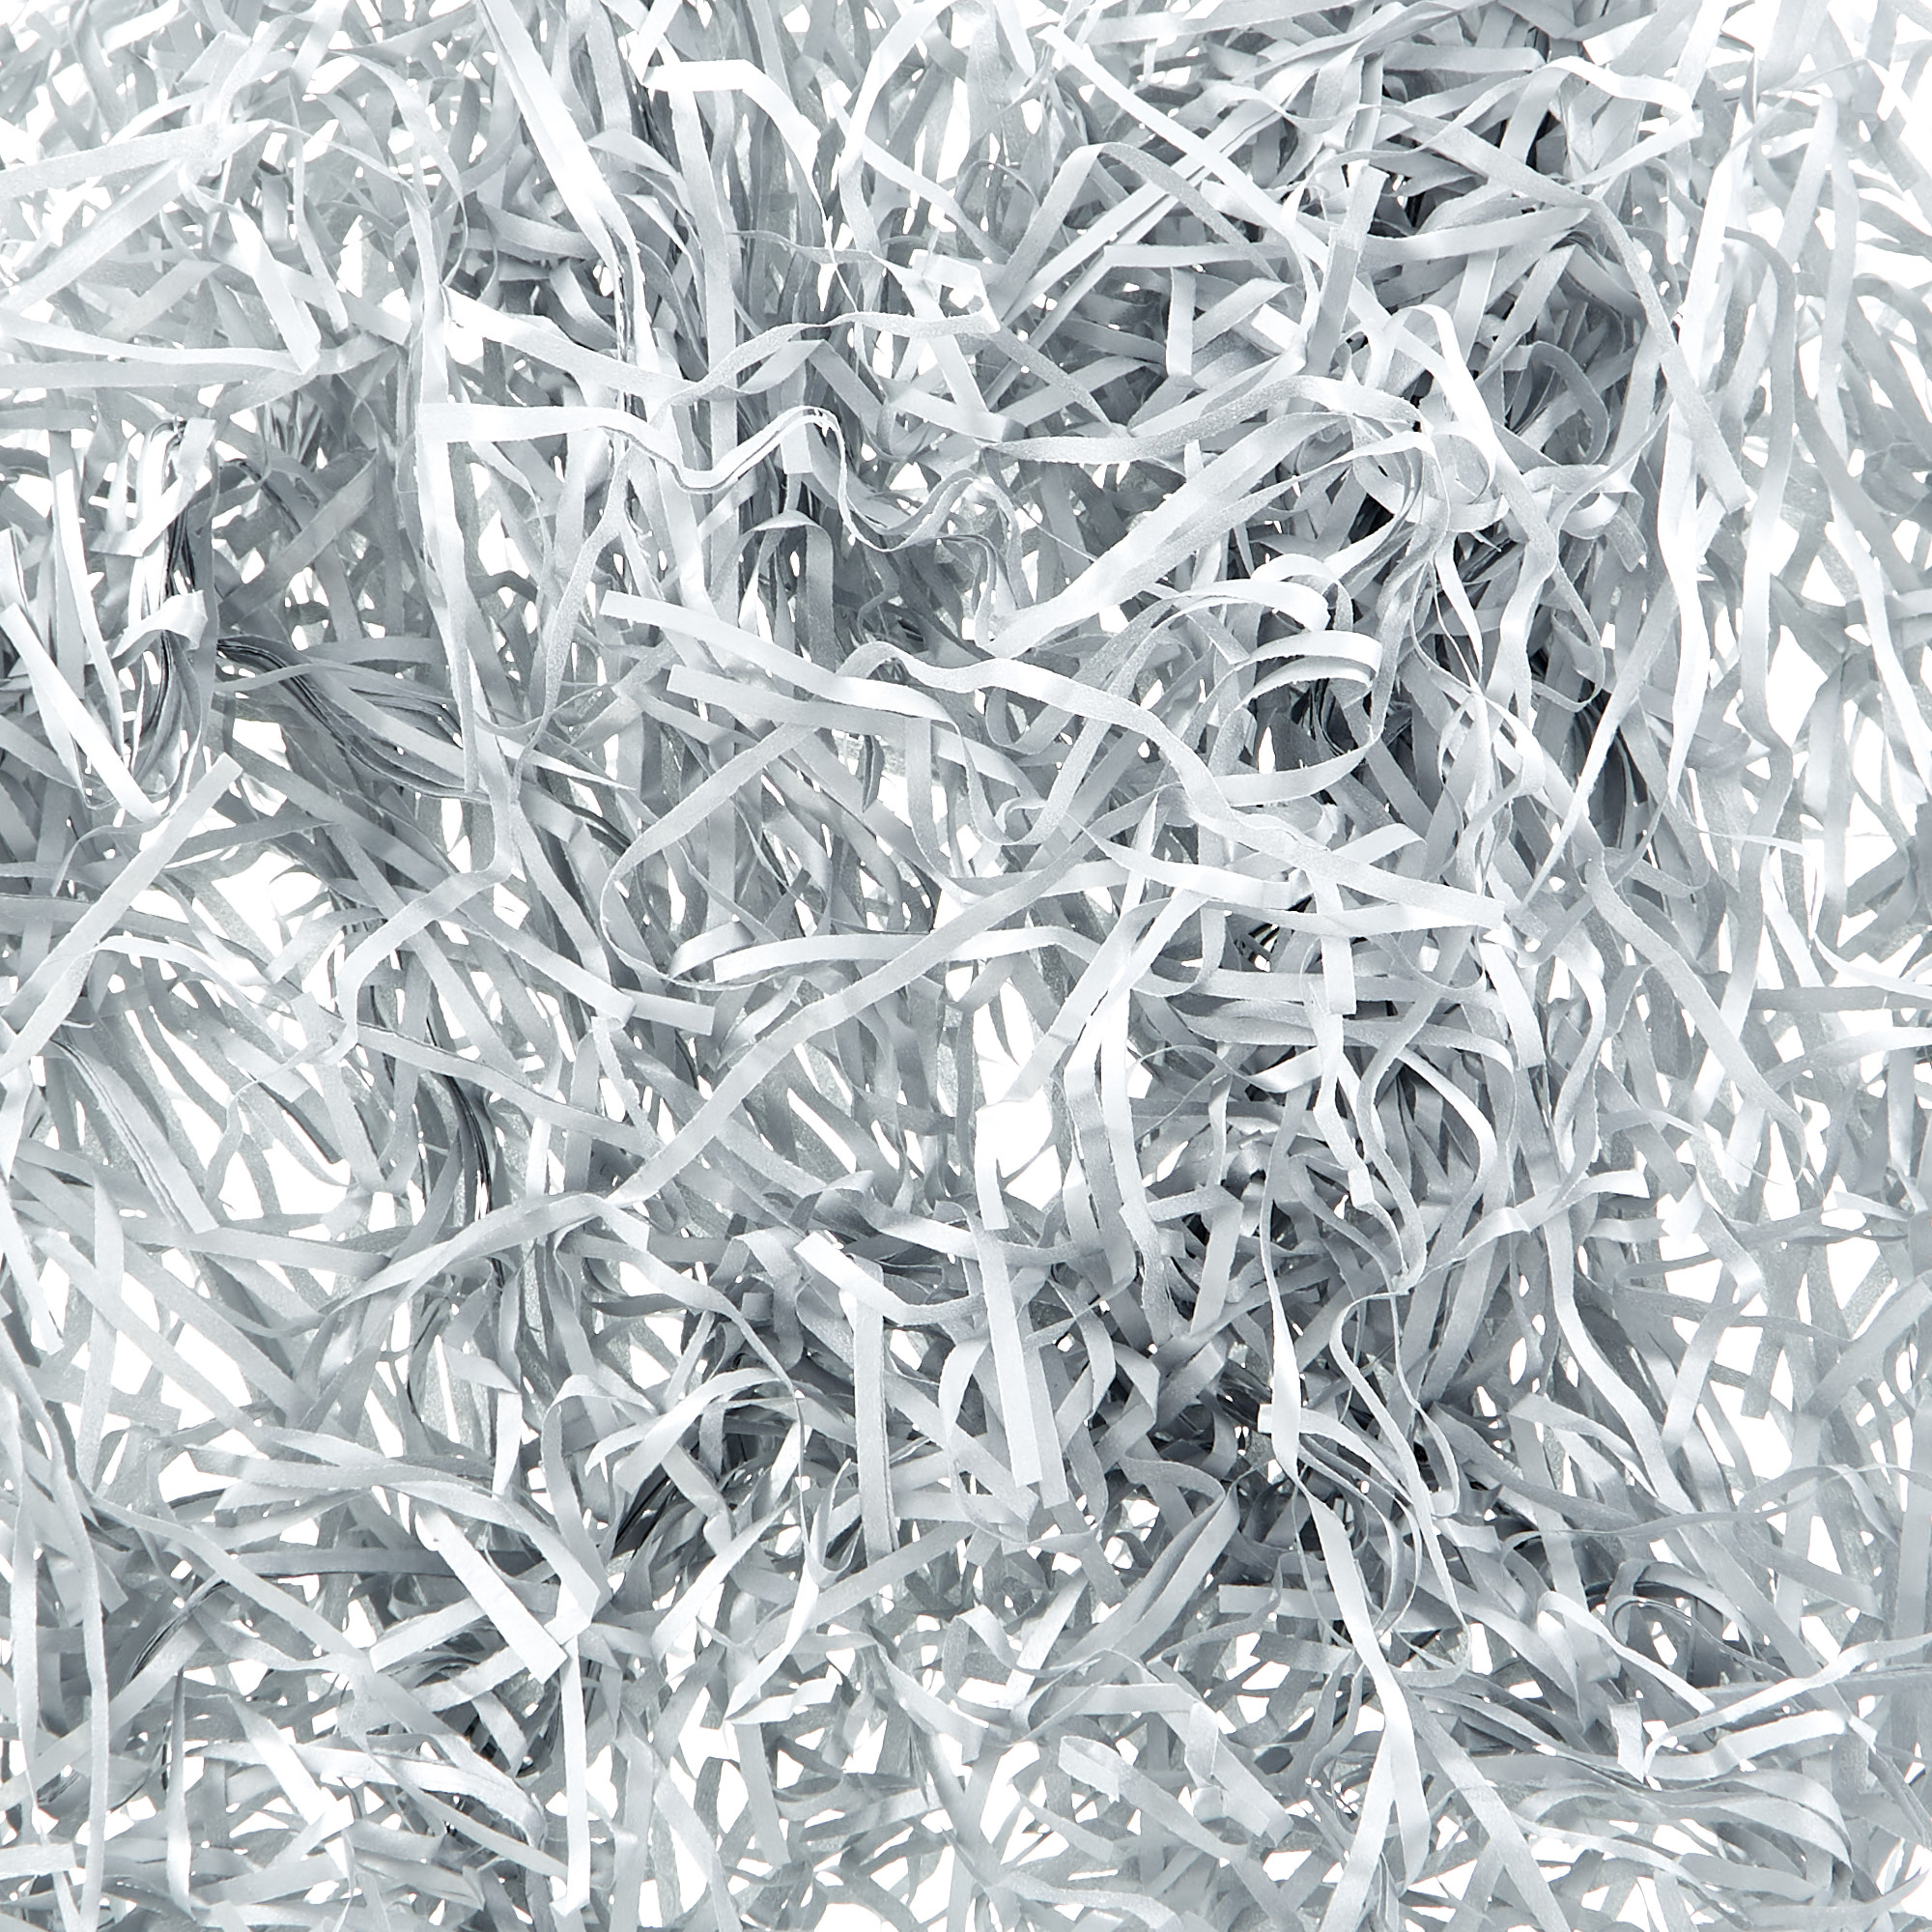 Silver Shredded Tissue Paper